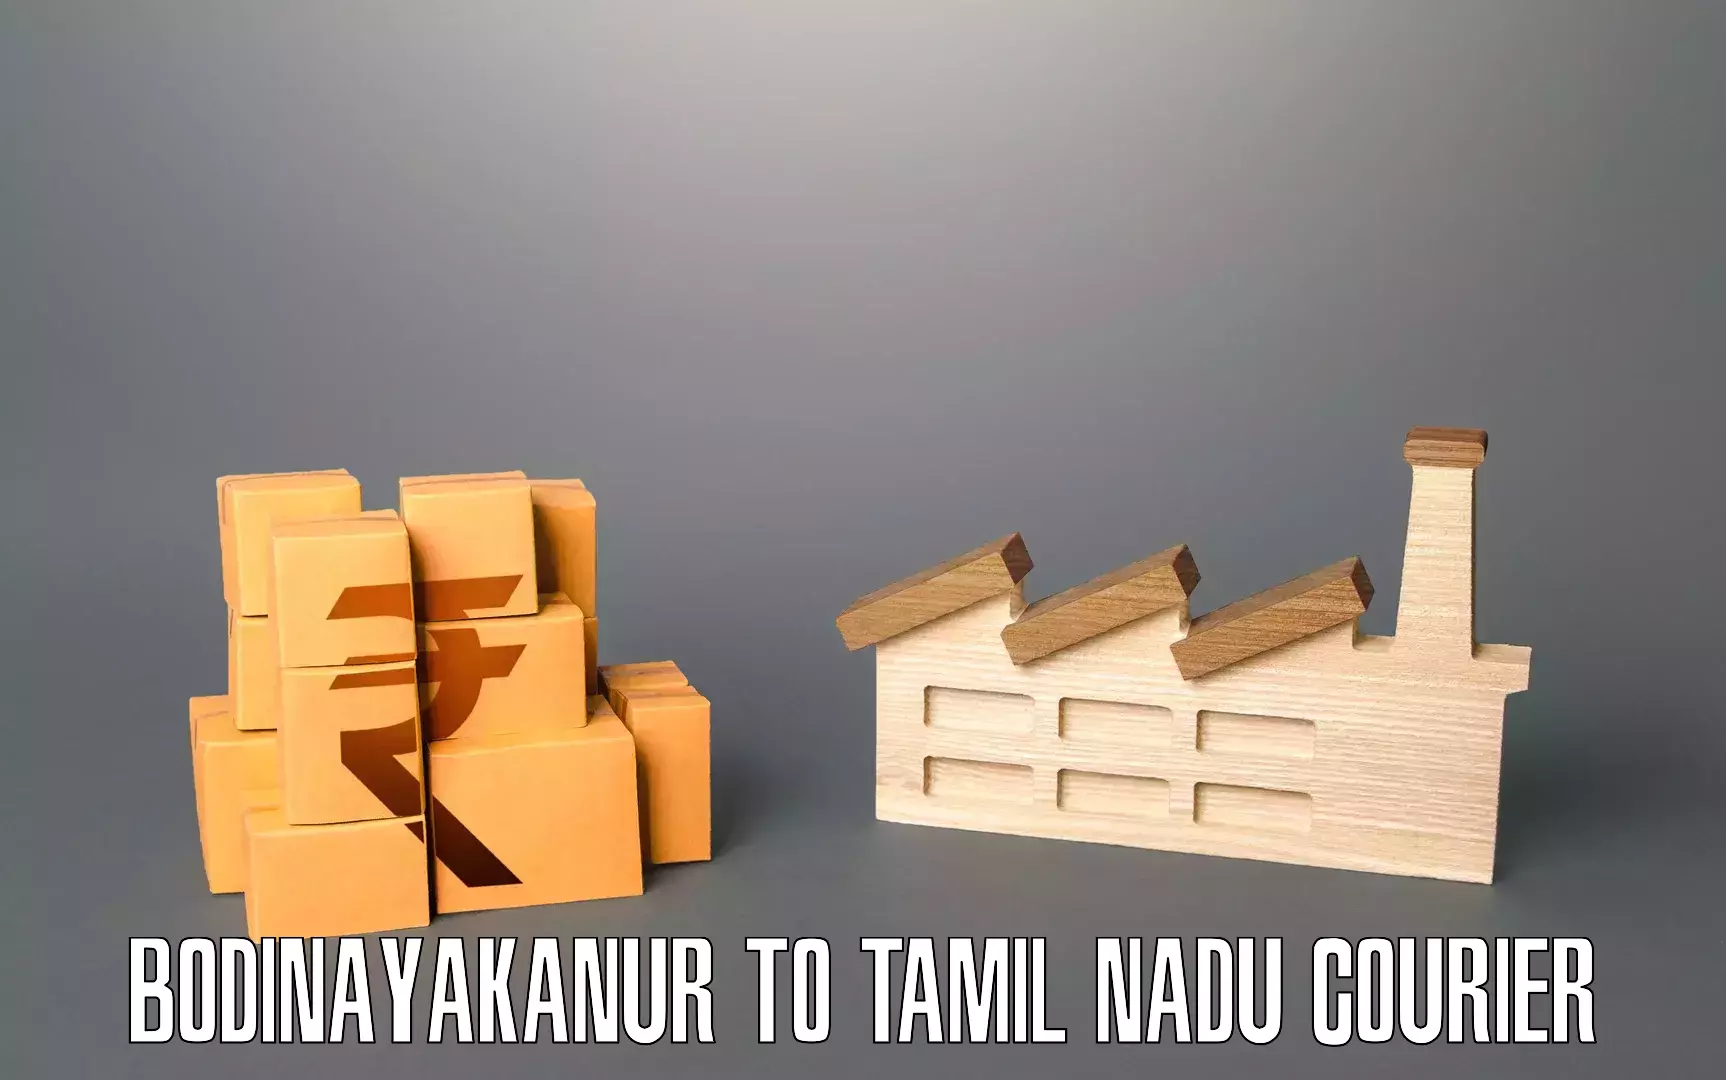 Furniture moving and handling Bodinayakanur to Peikulam